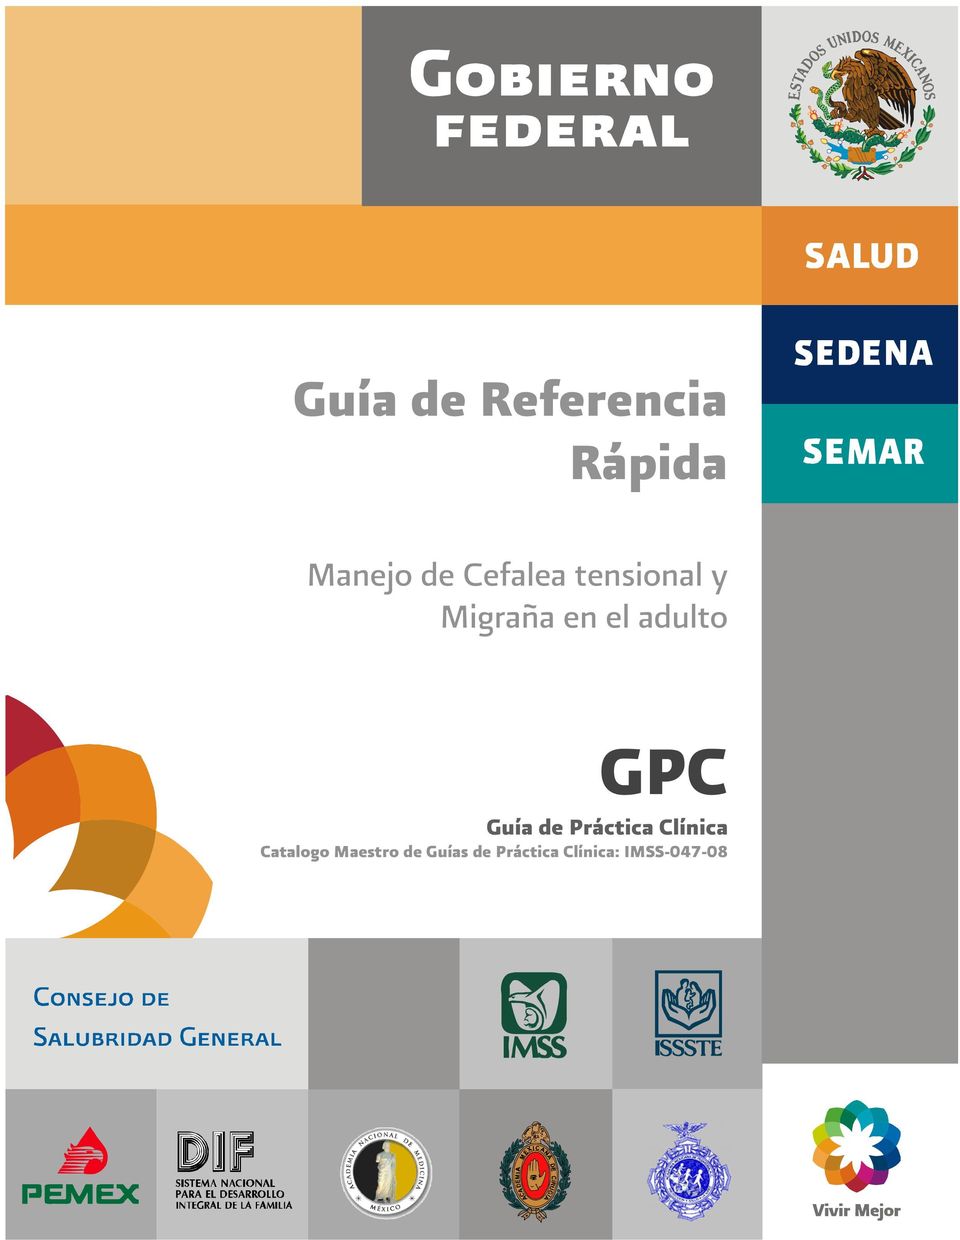 GPC Guía de Práctica Clínica Catalogo